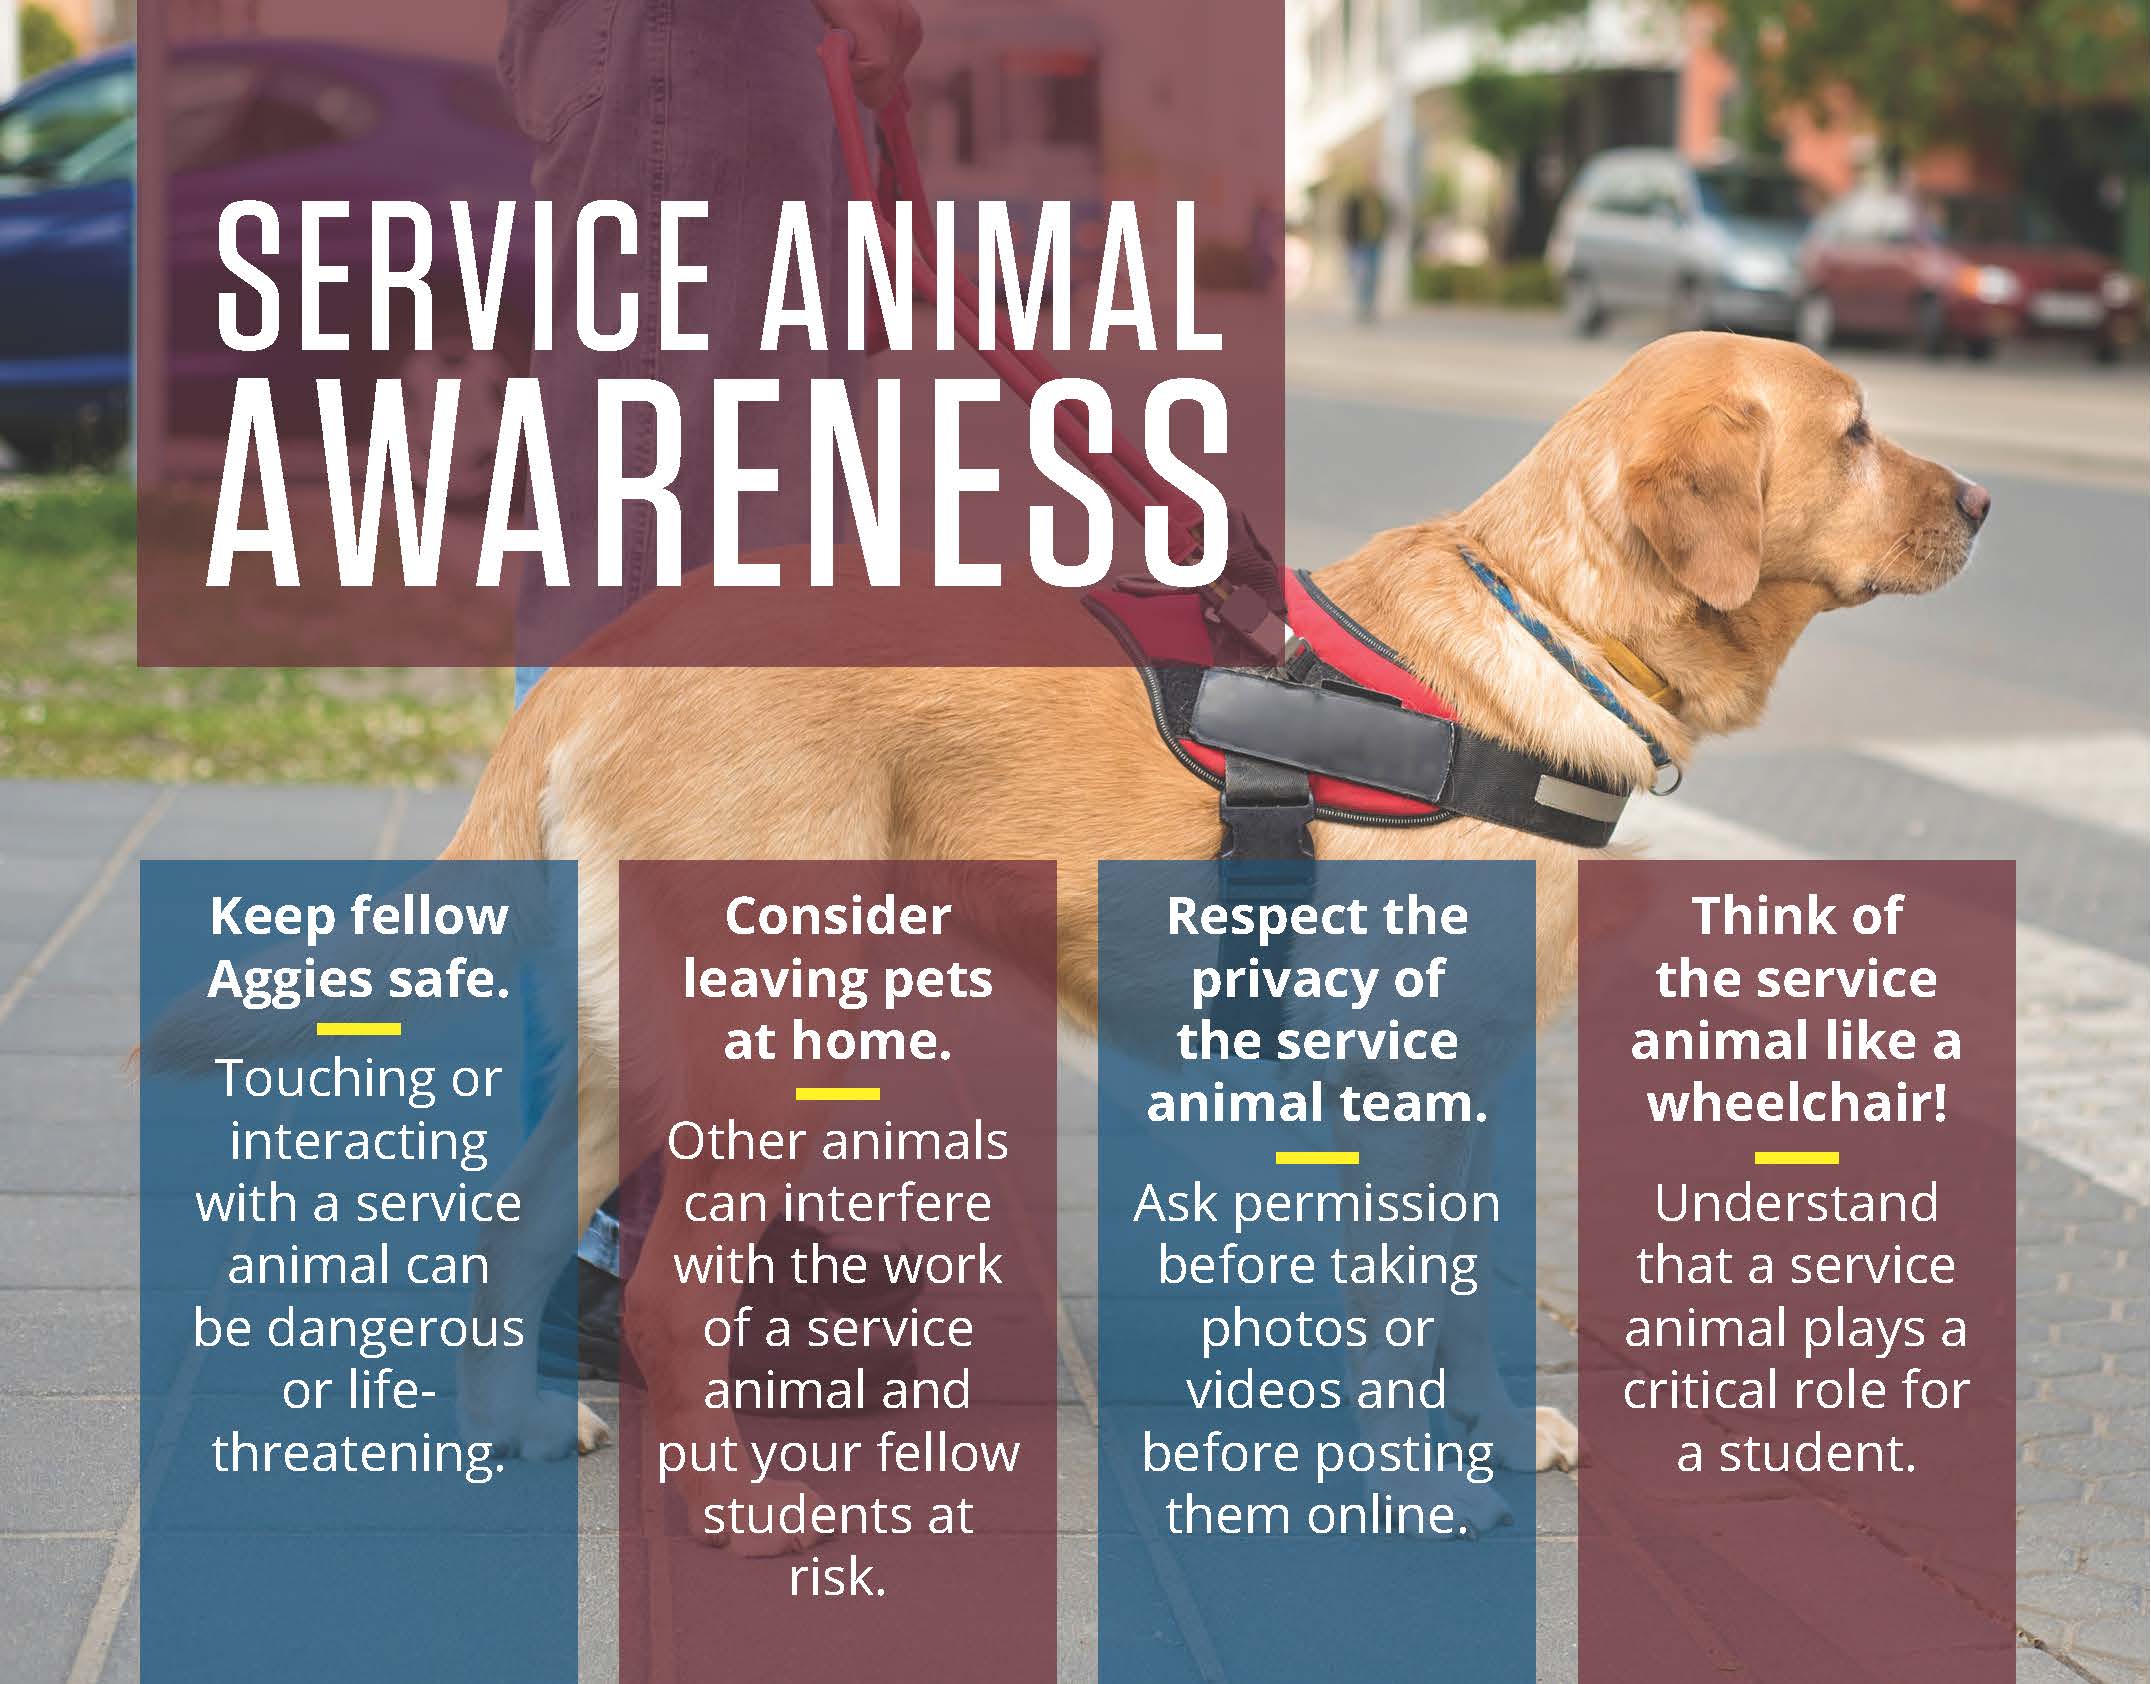 Services Animal Ettiquitte - long description - Disability Resources